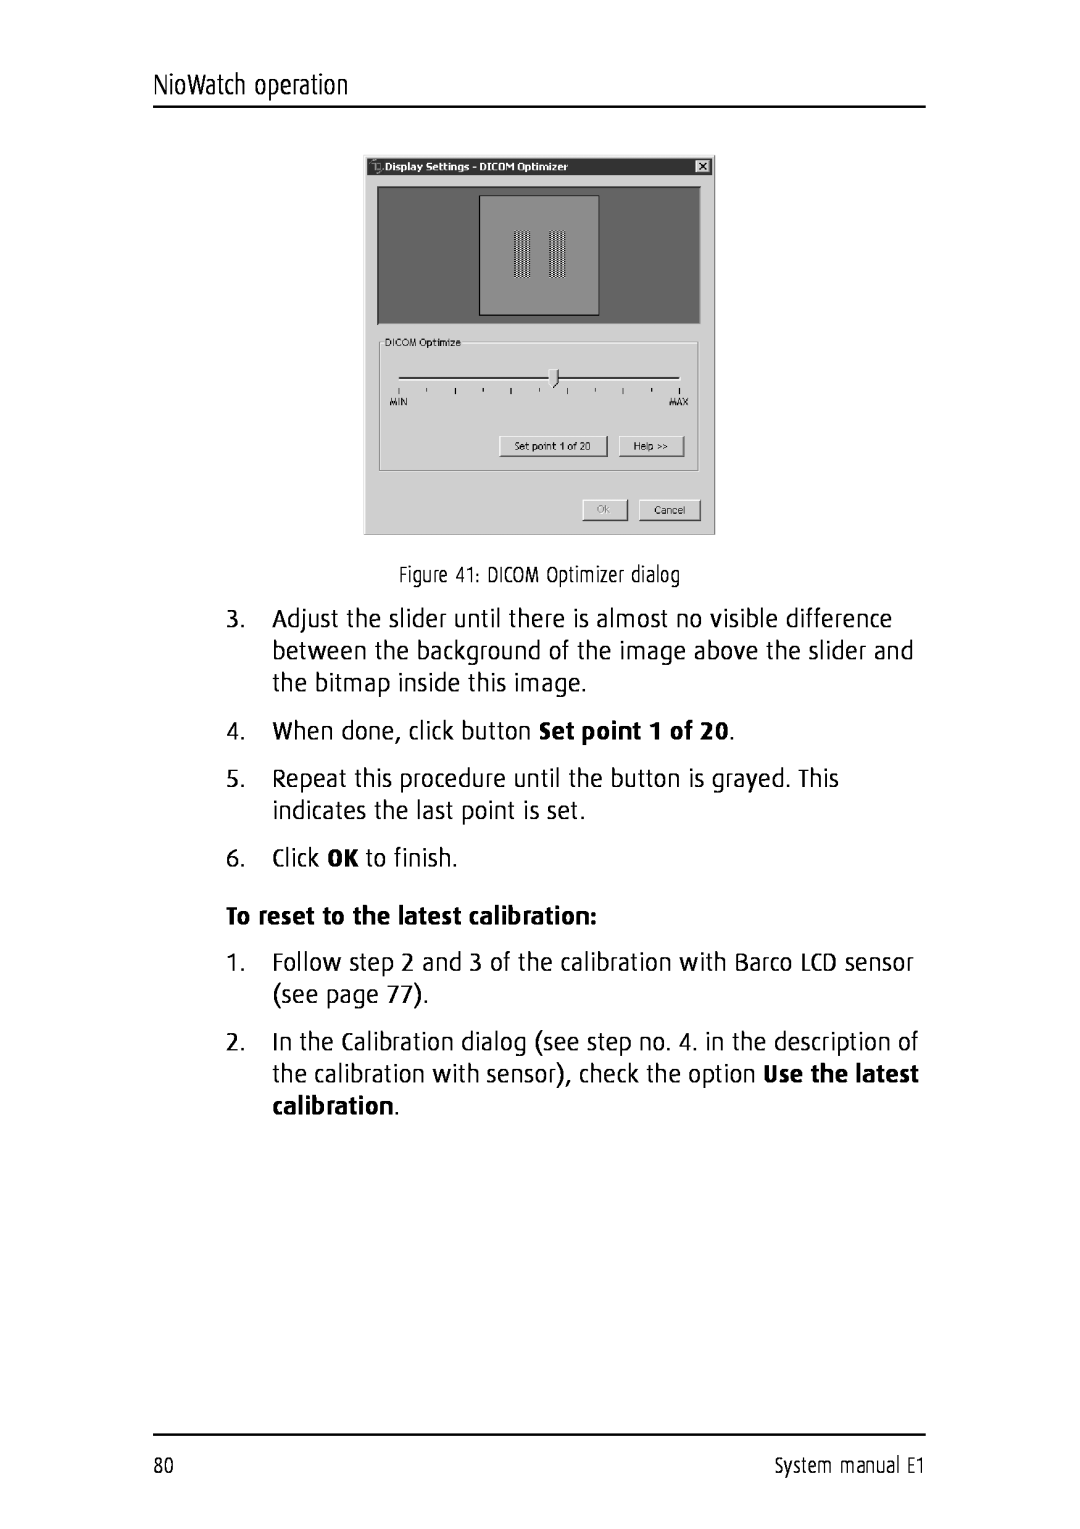 Barco E1 manual To reset to the latest calibration, NioWatch operation, DICOM Optimizer dialog 